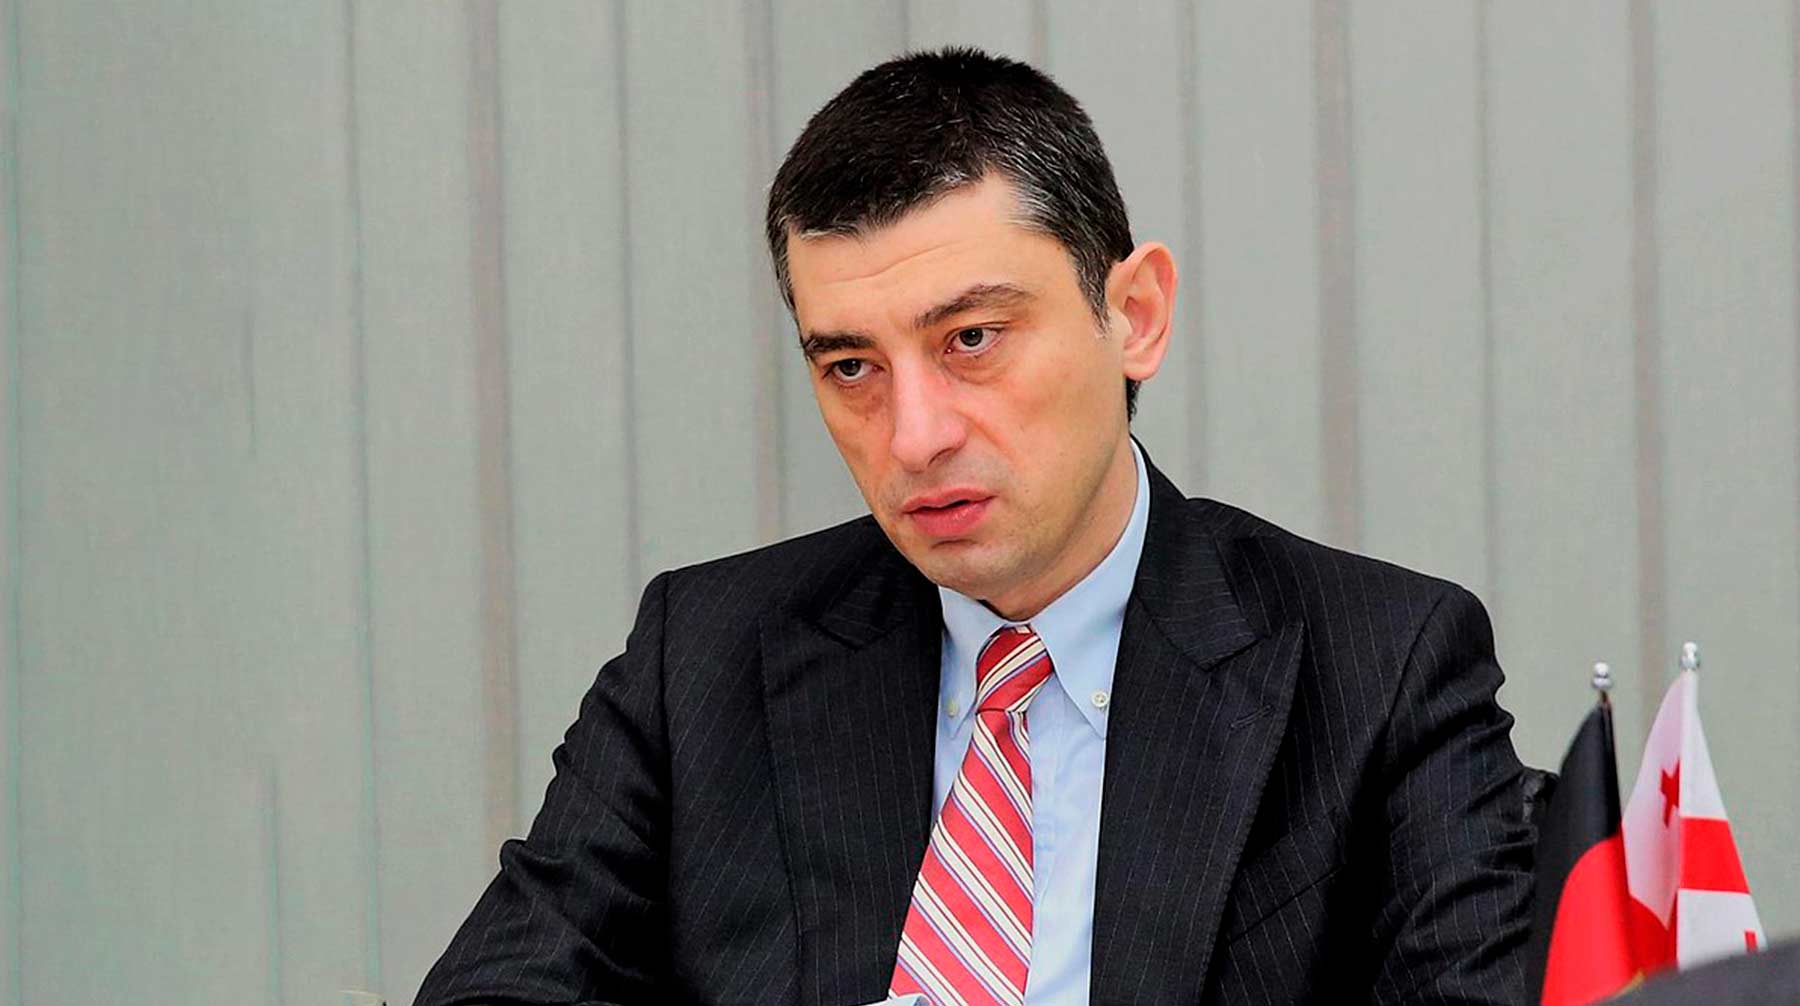 Свое решение Георгий Гахария объяснил разногласиями в команде и политическим кризисом в стране Премьер-министр Грузии Георгий Гахария